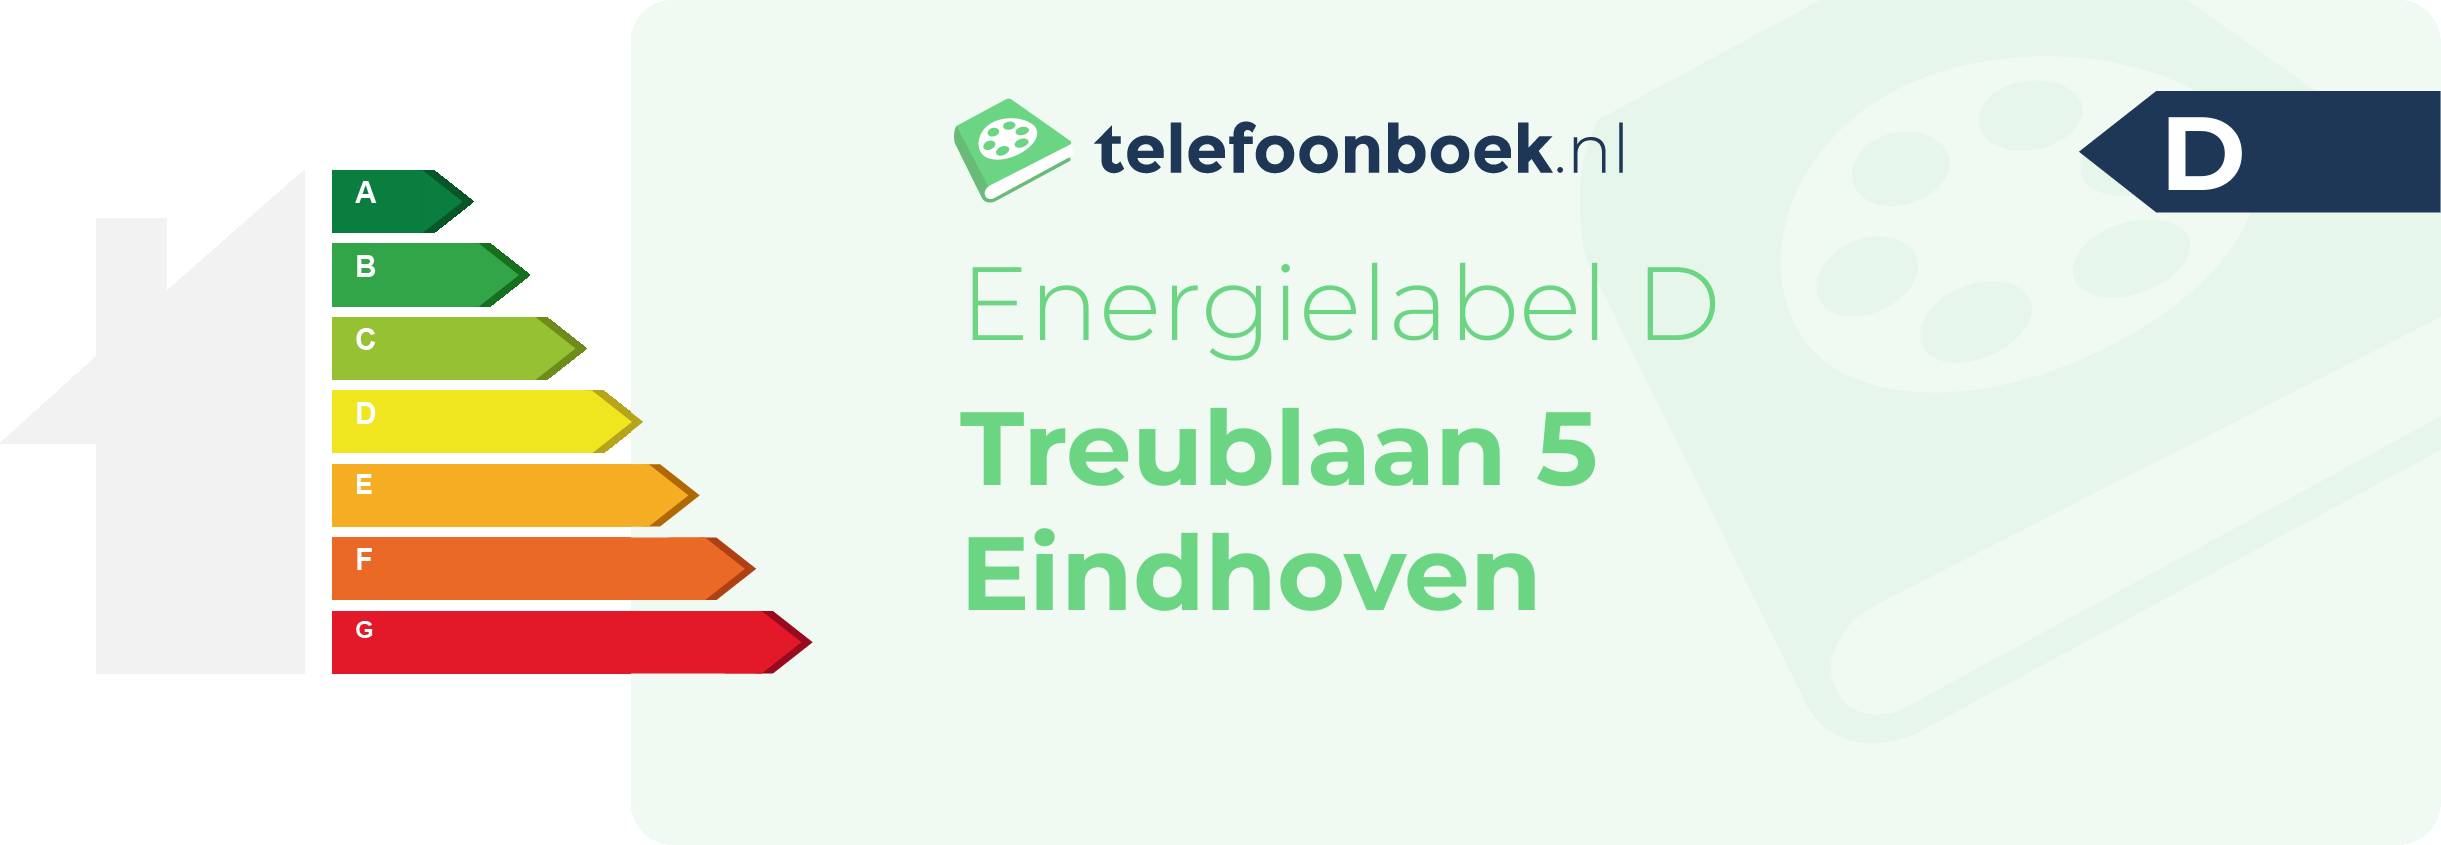 Energielabel Treublaan 5 Eindhoven